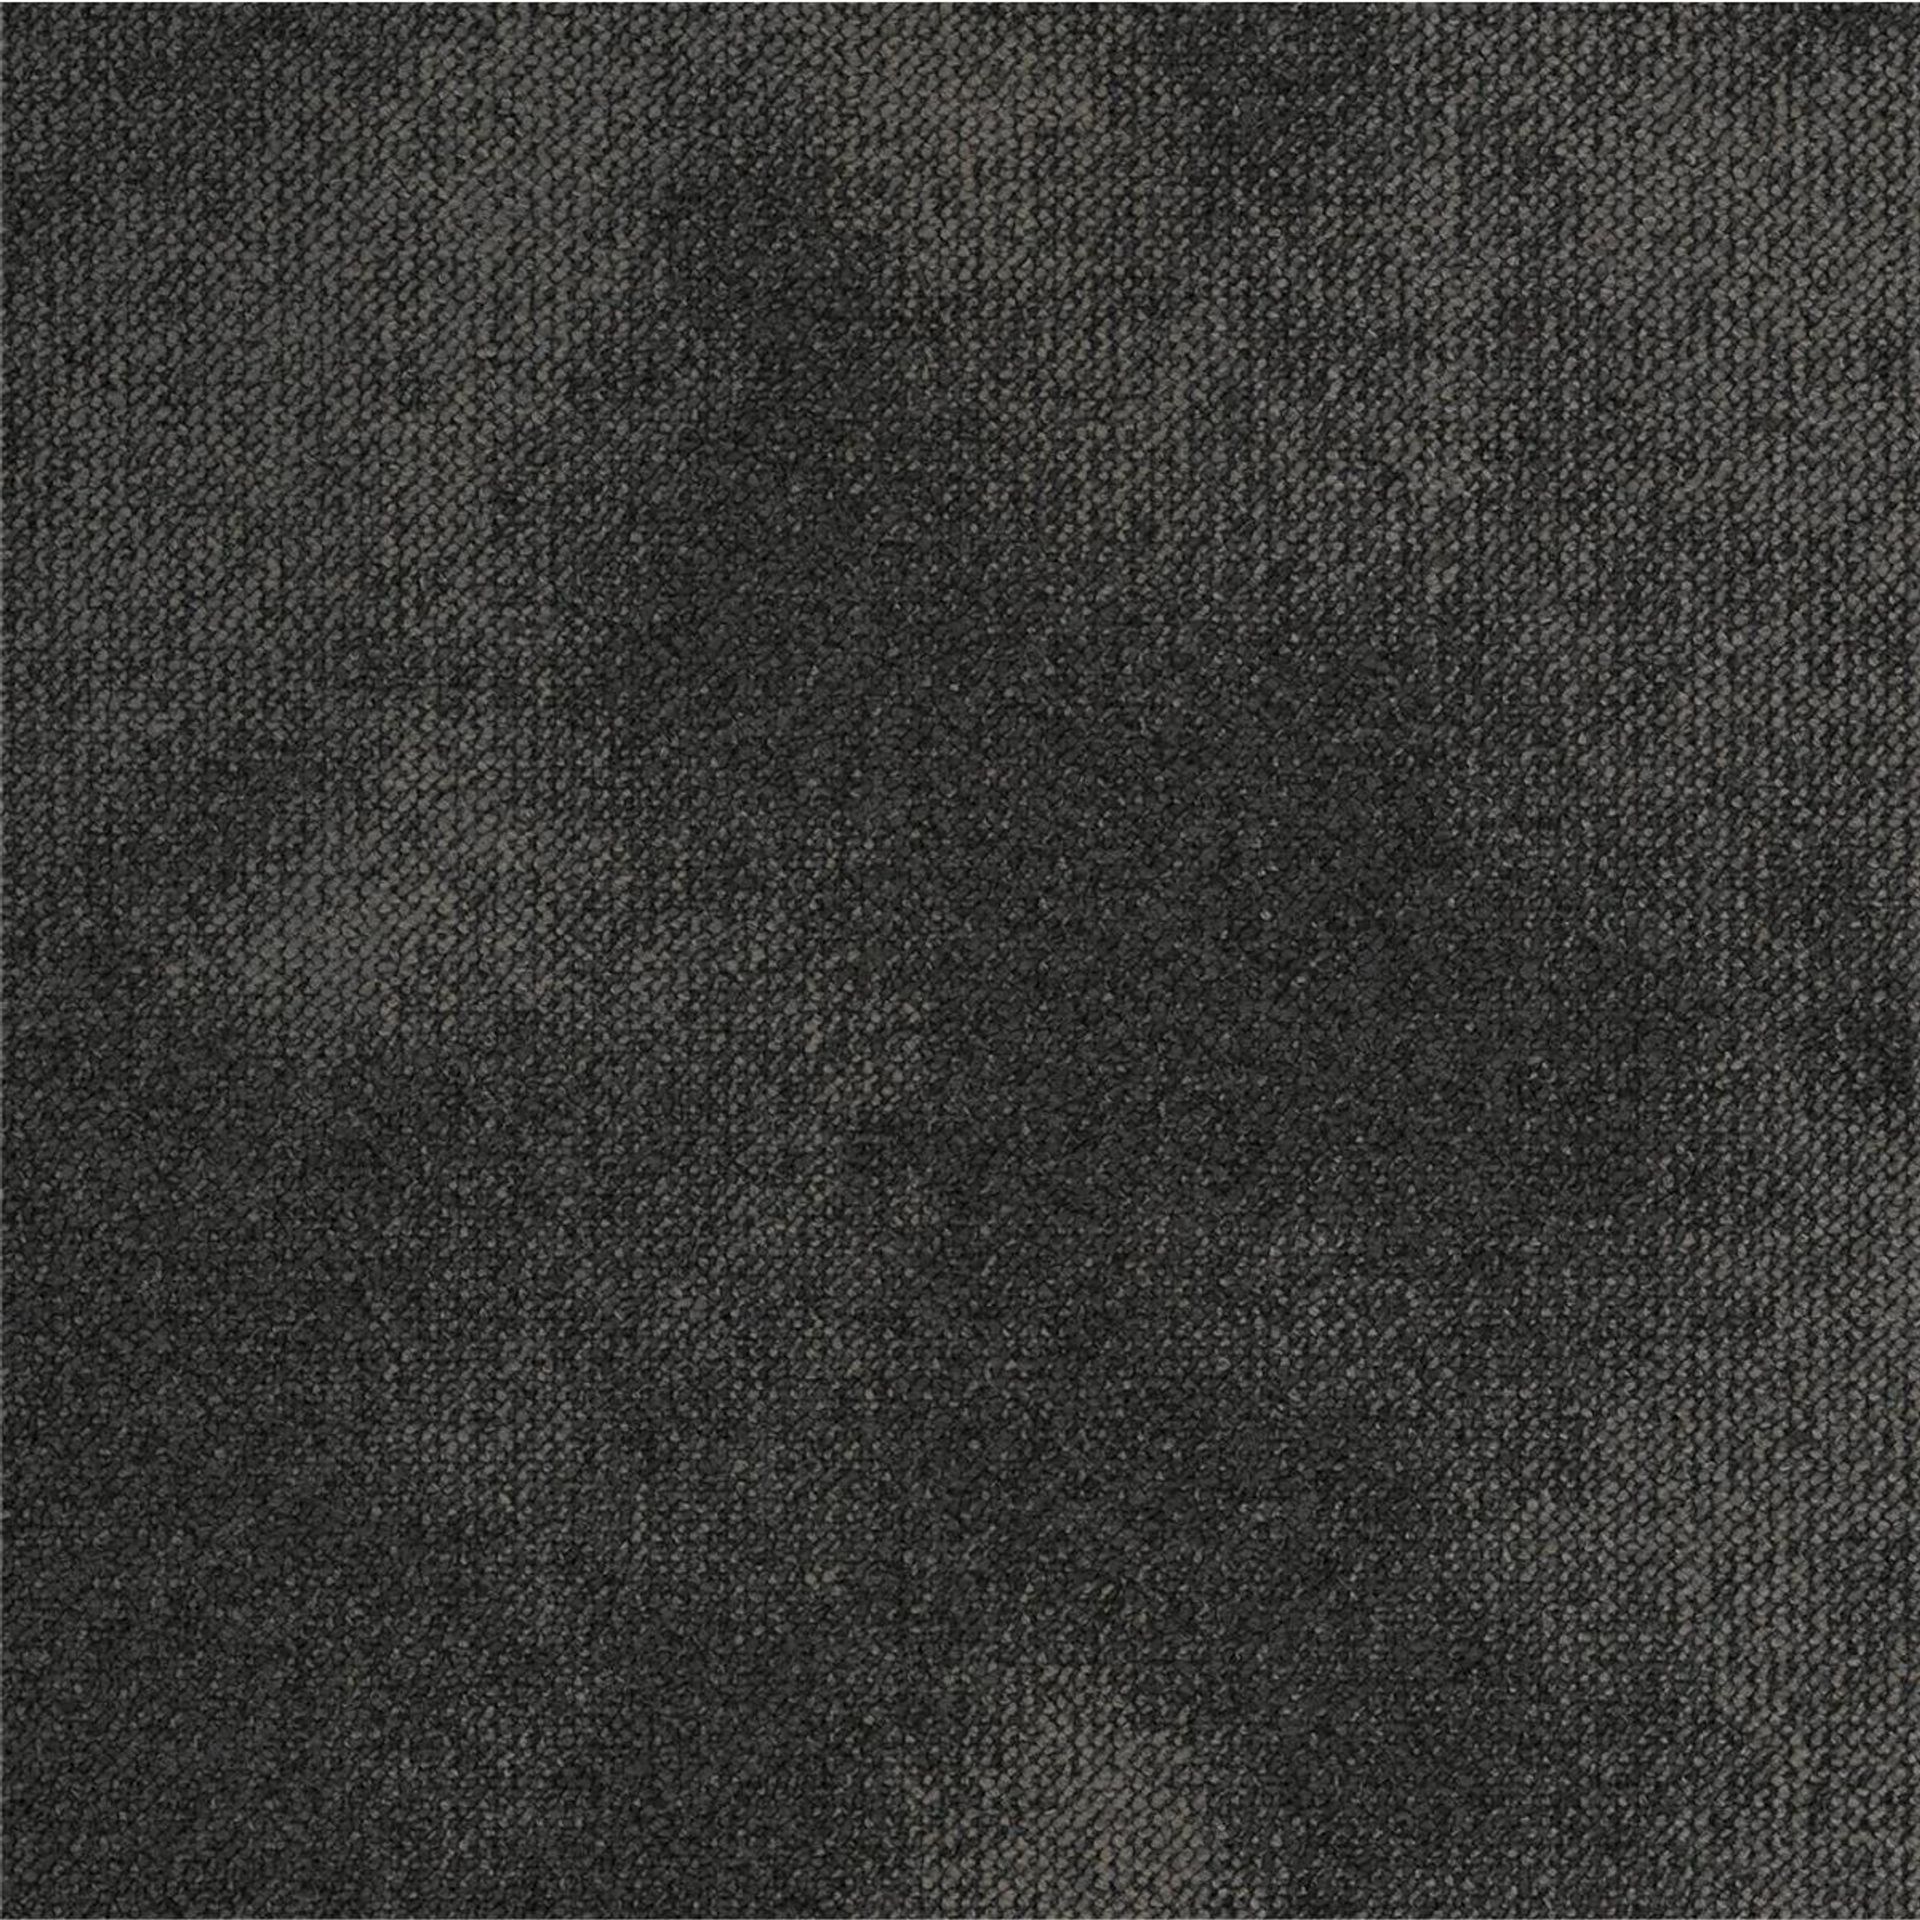 Teppichfliesen 50 x 50 cm Schlinge strukturiert Serene AB93 9850 B8 Schwarz Organisch